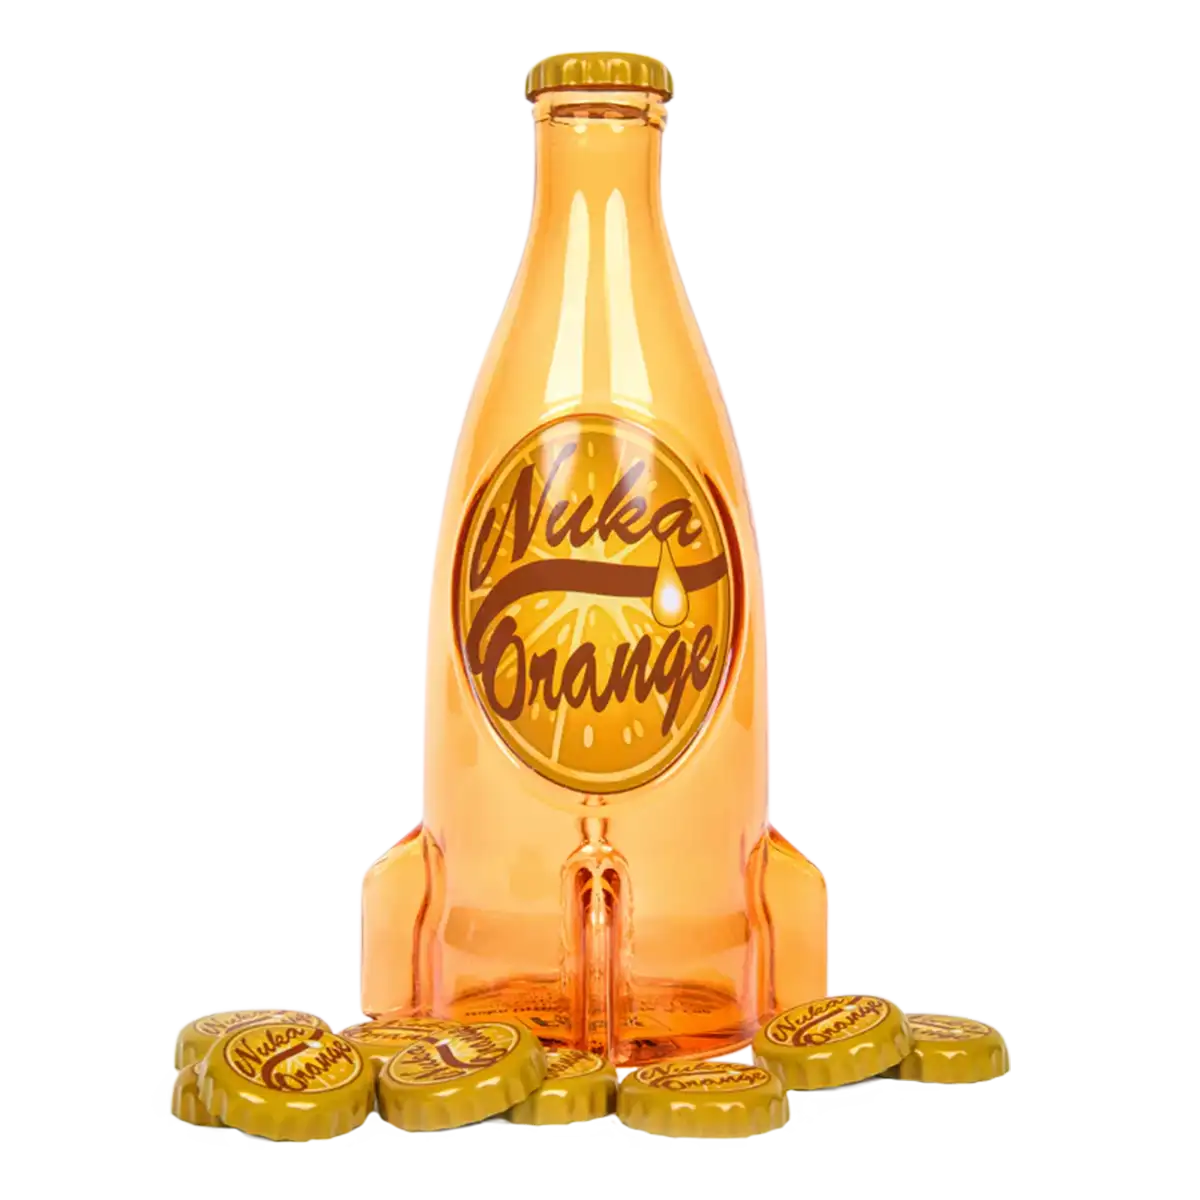 Fallout "Nuka Cola Orange" Glasflasche und Kronkorken